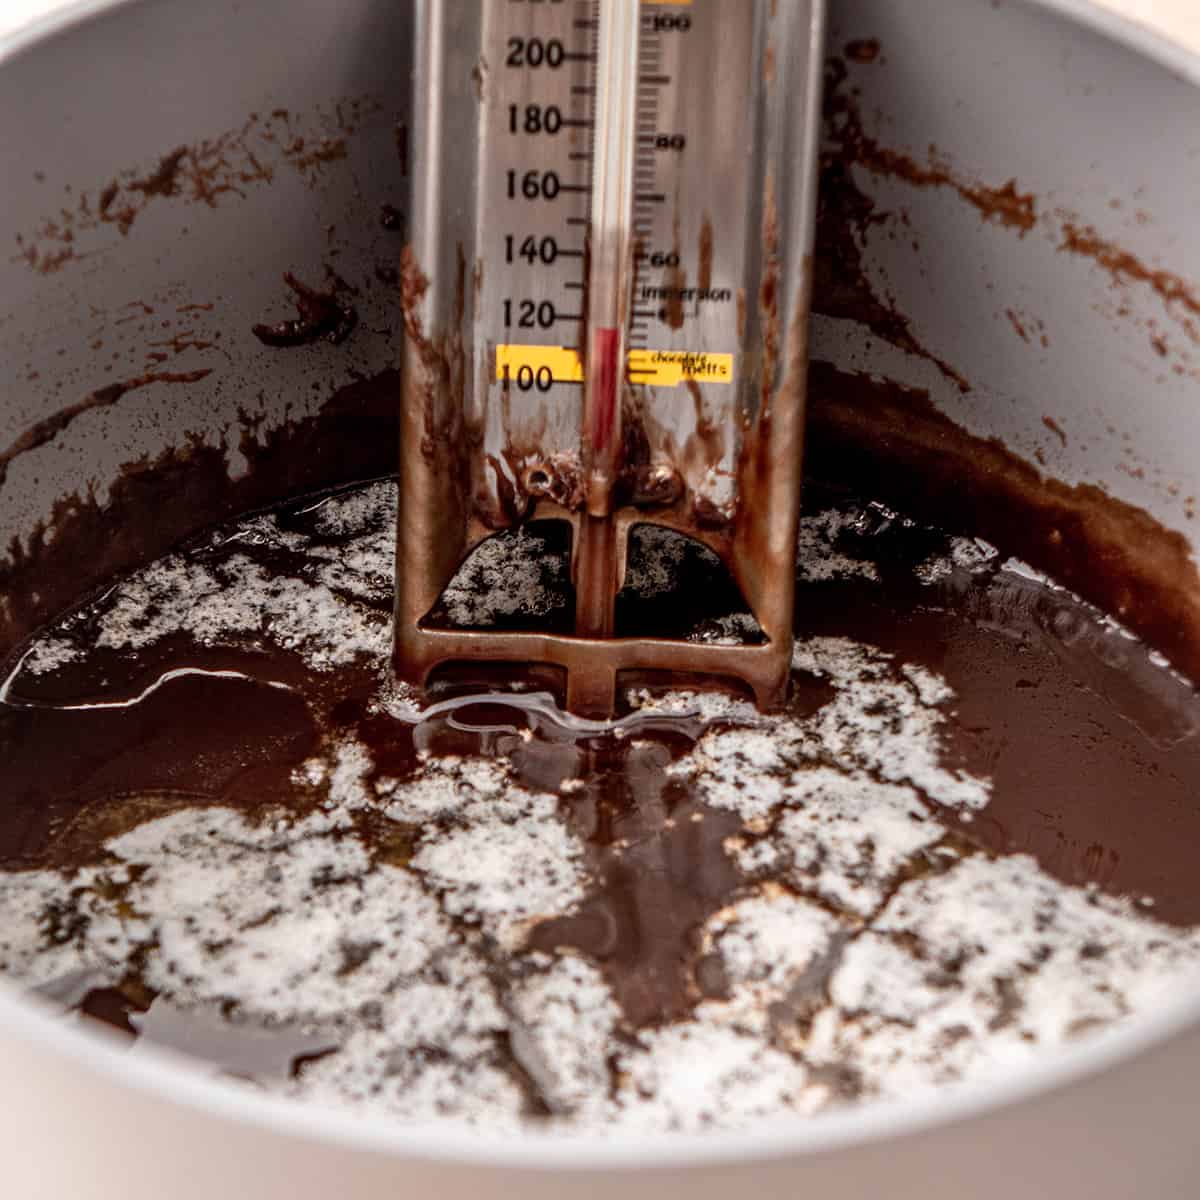 How to Make Chocolate Fudge - adding vanilla